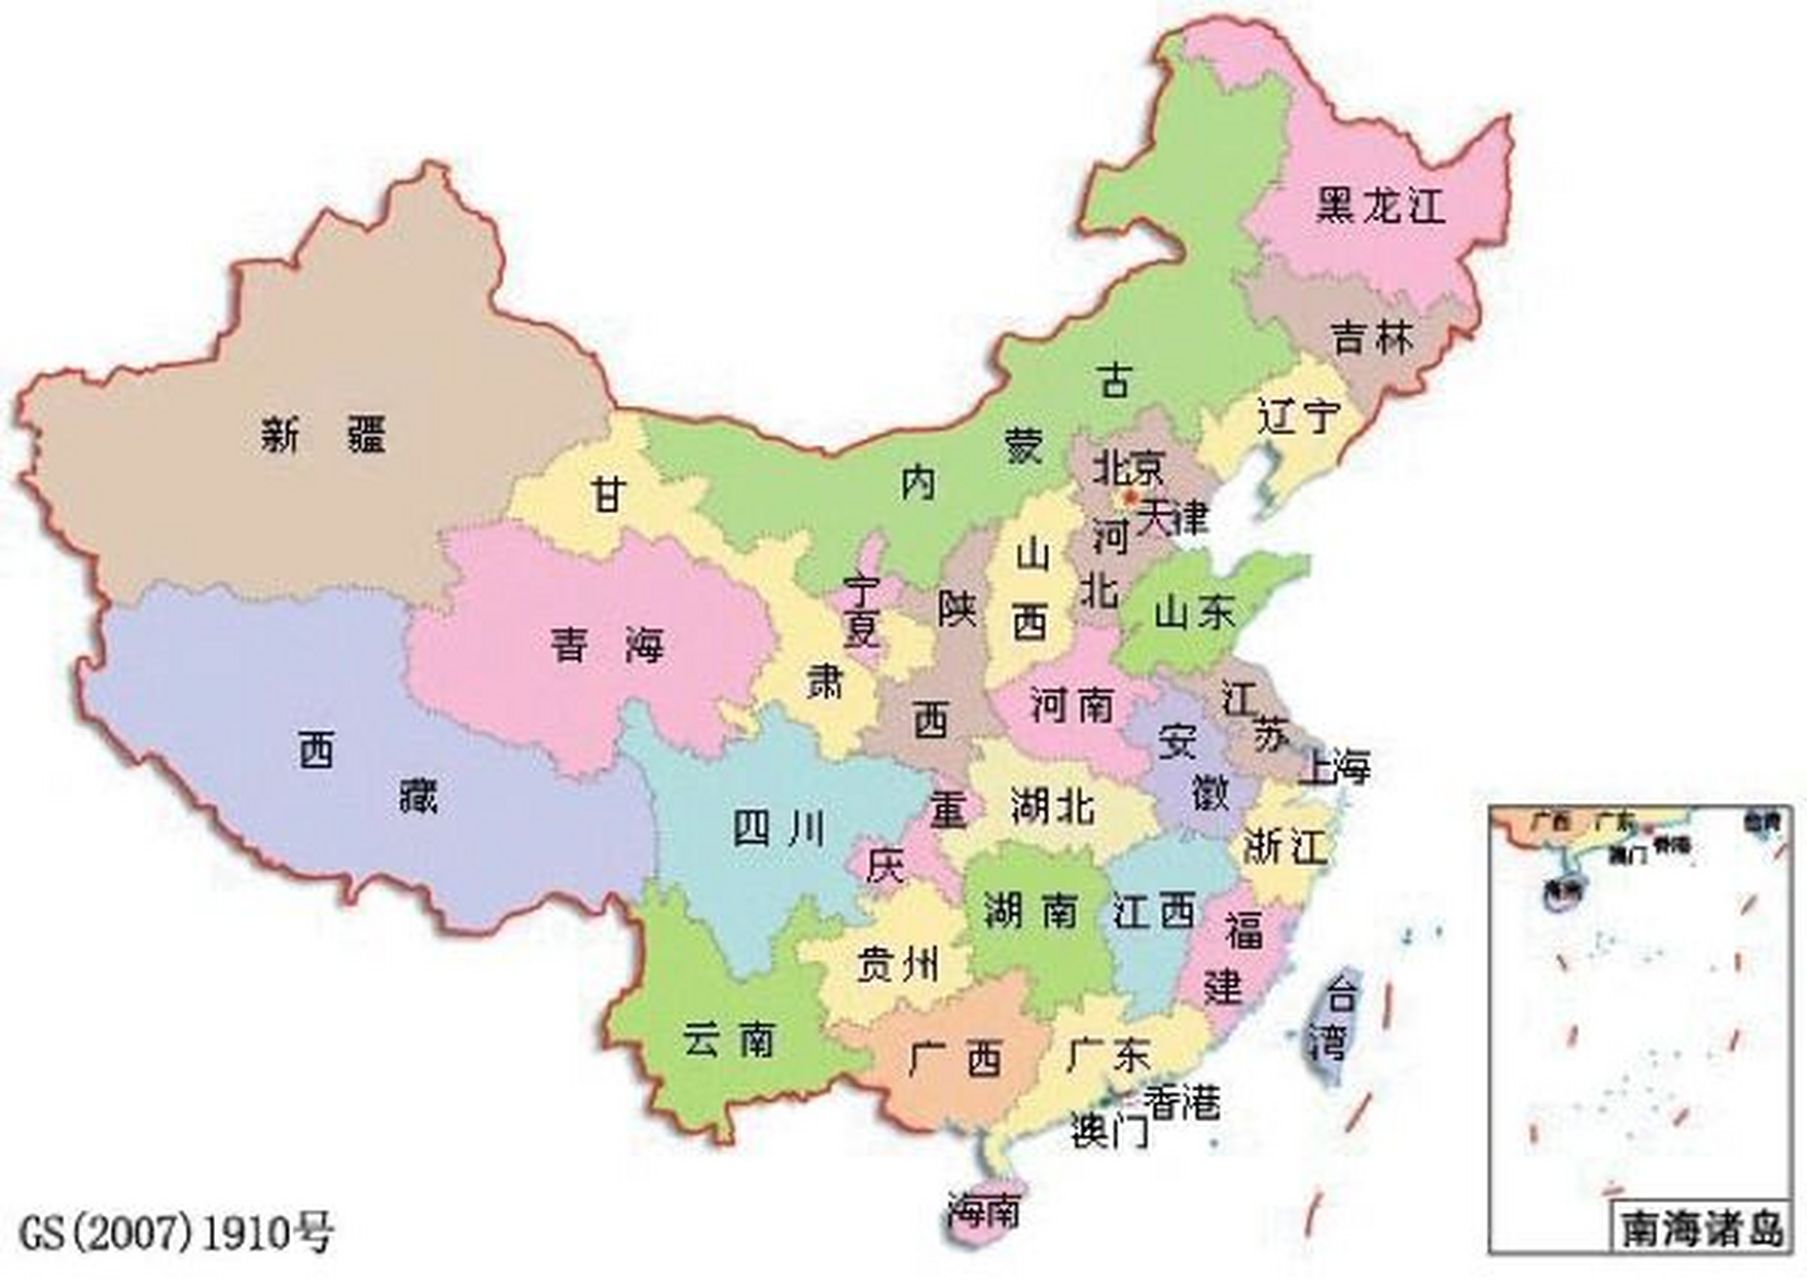 中国七大分区,你了解吗? 应大家要求,我在后面加上了中国地图